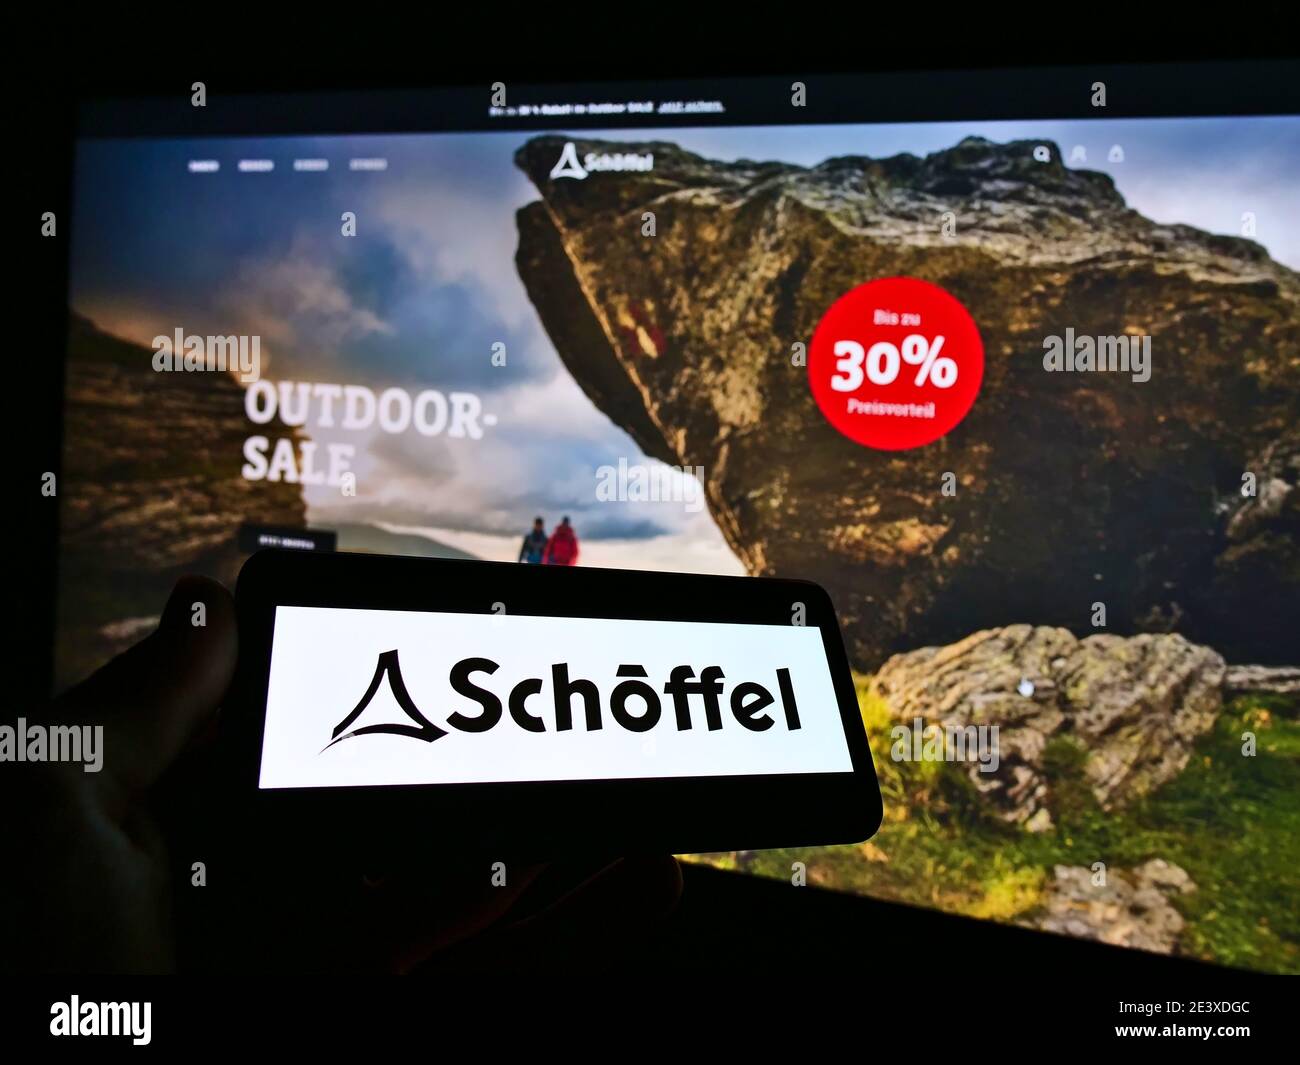 Persona que sostiene smartphone con el logotipo de la empresa de ropa al aire libre Schöffel en la pantalla frente a la tienda en línea sitio web. Céntrese en el monitor del teléfono móvil. Foto de stock